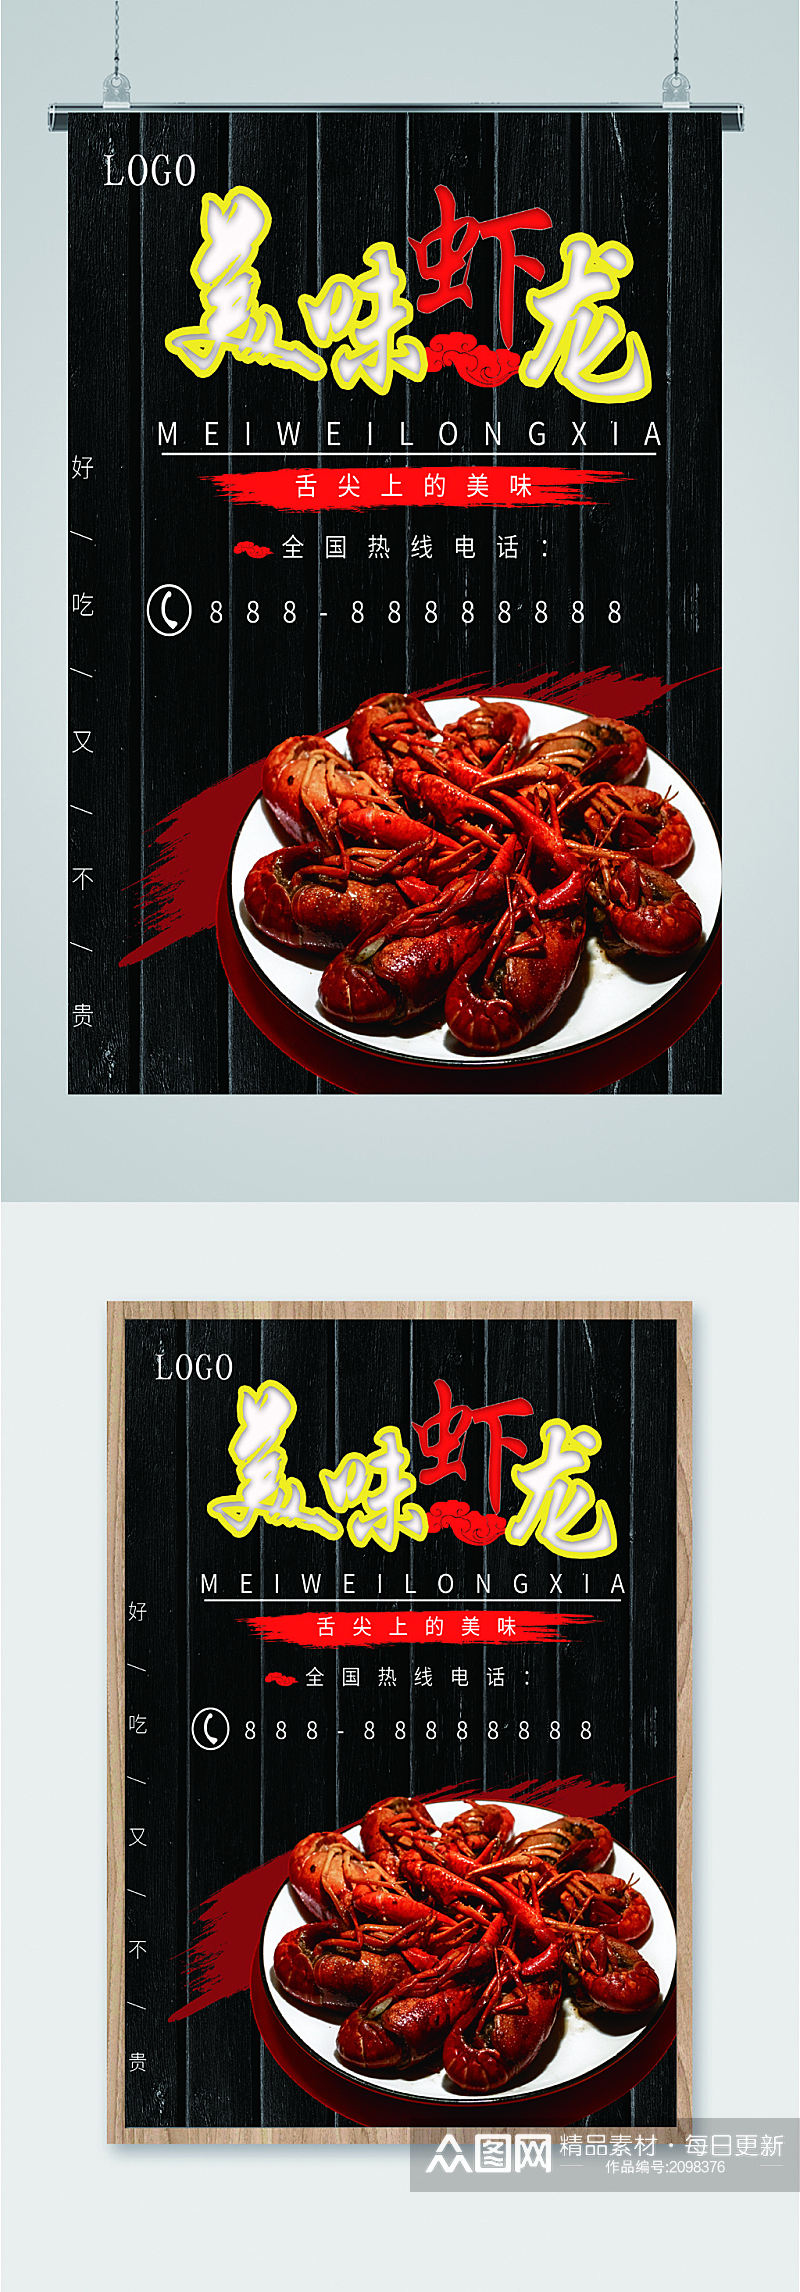 麻辣美味龙虾促销海报素材